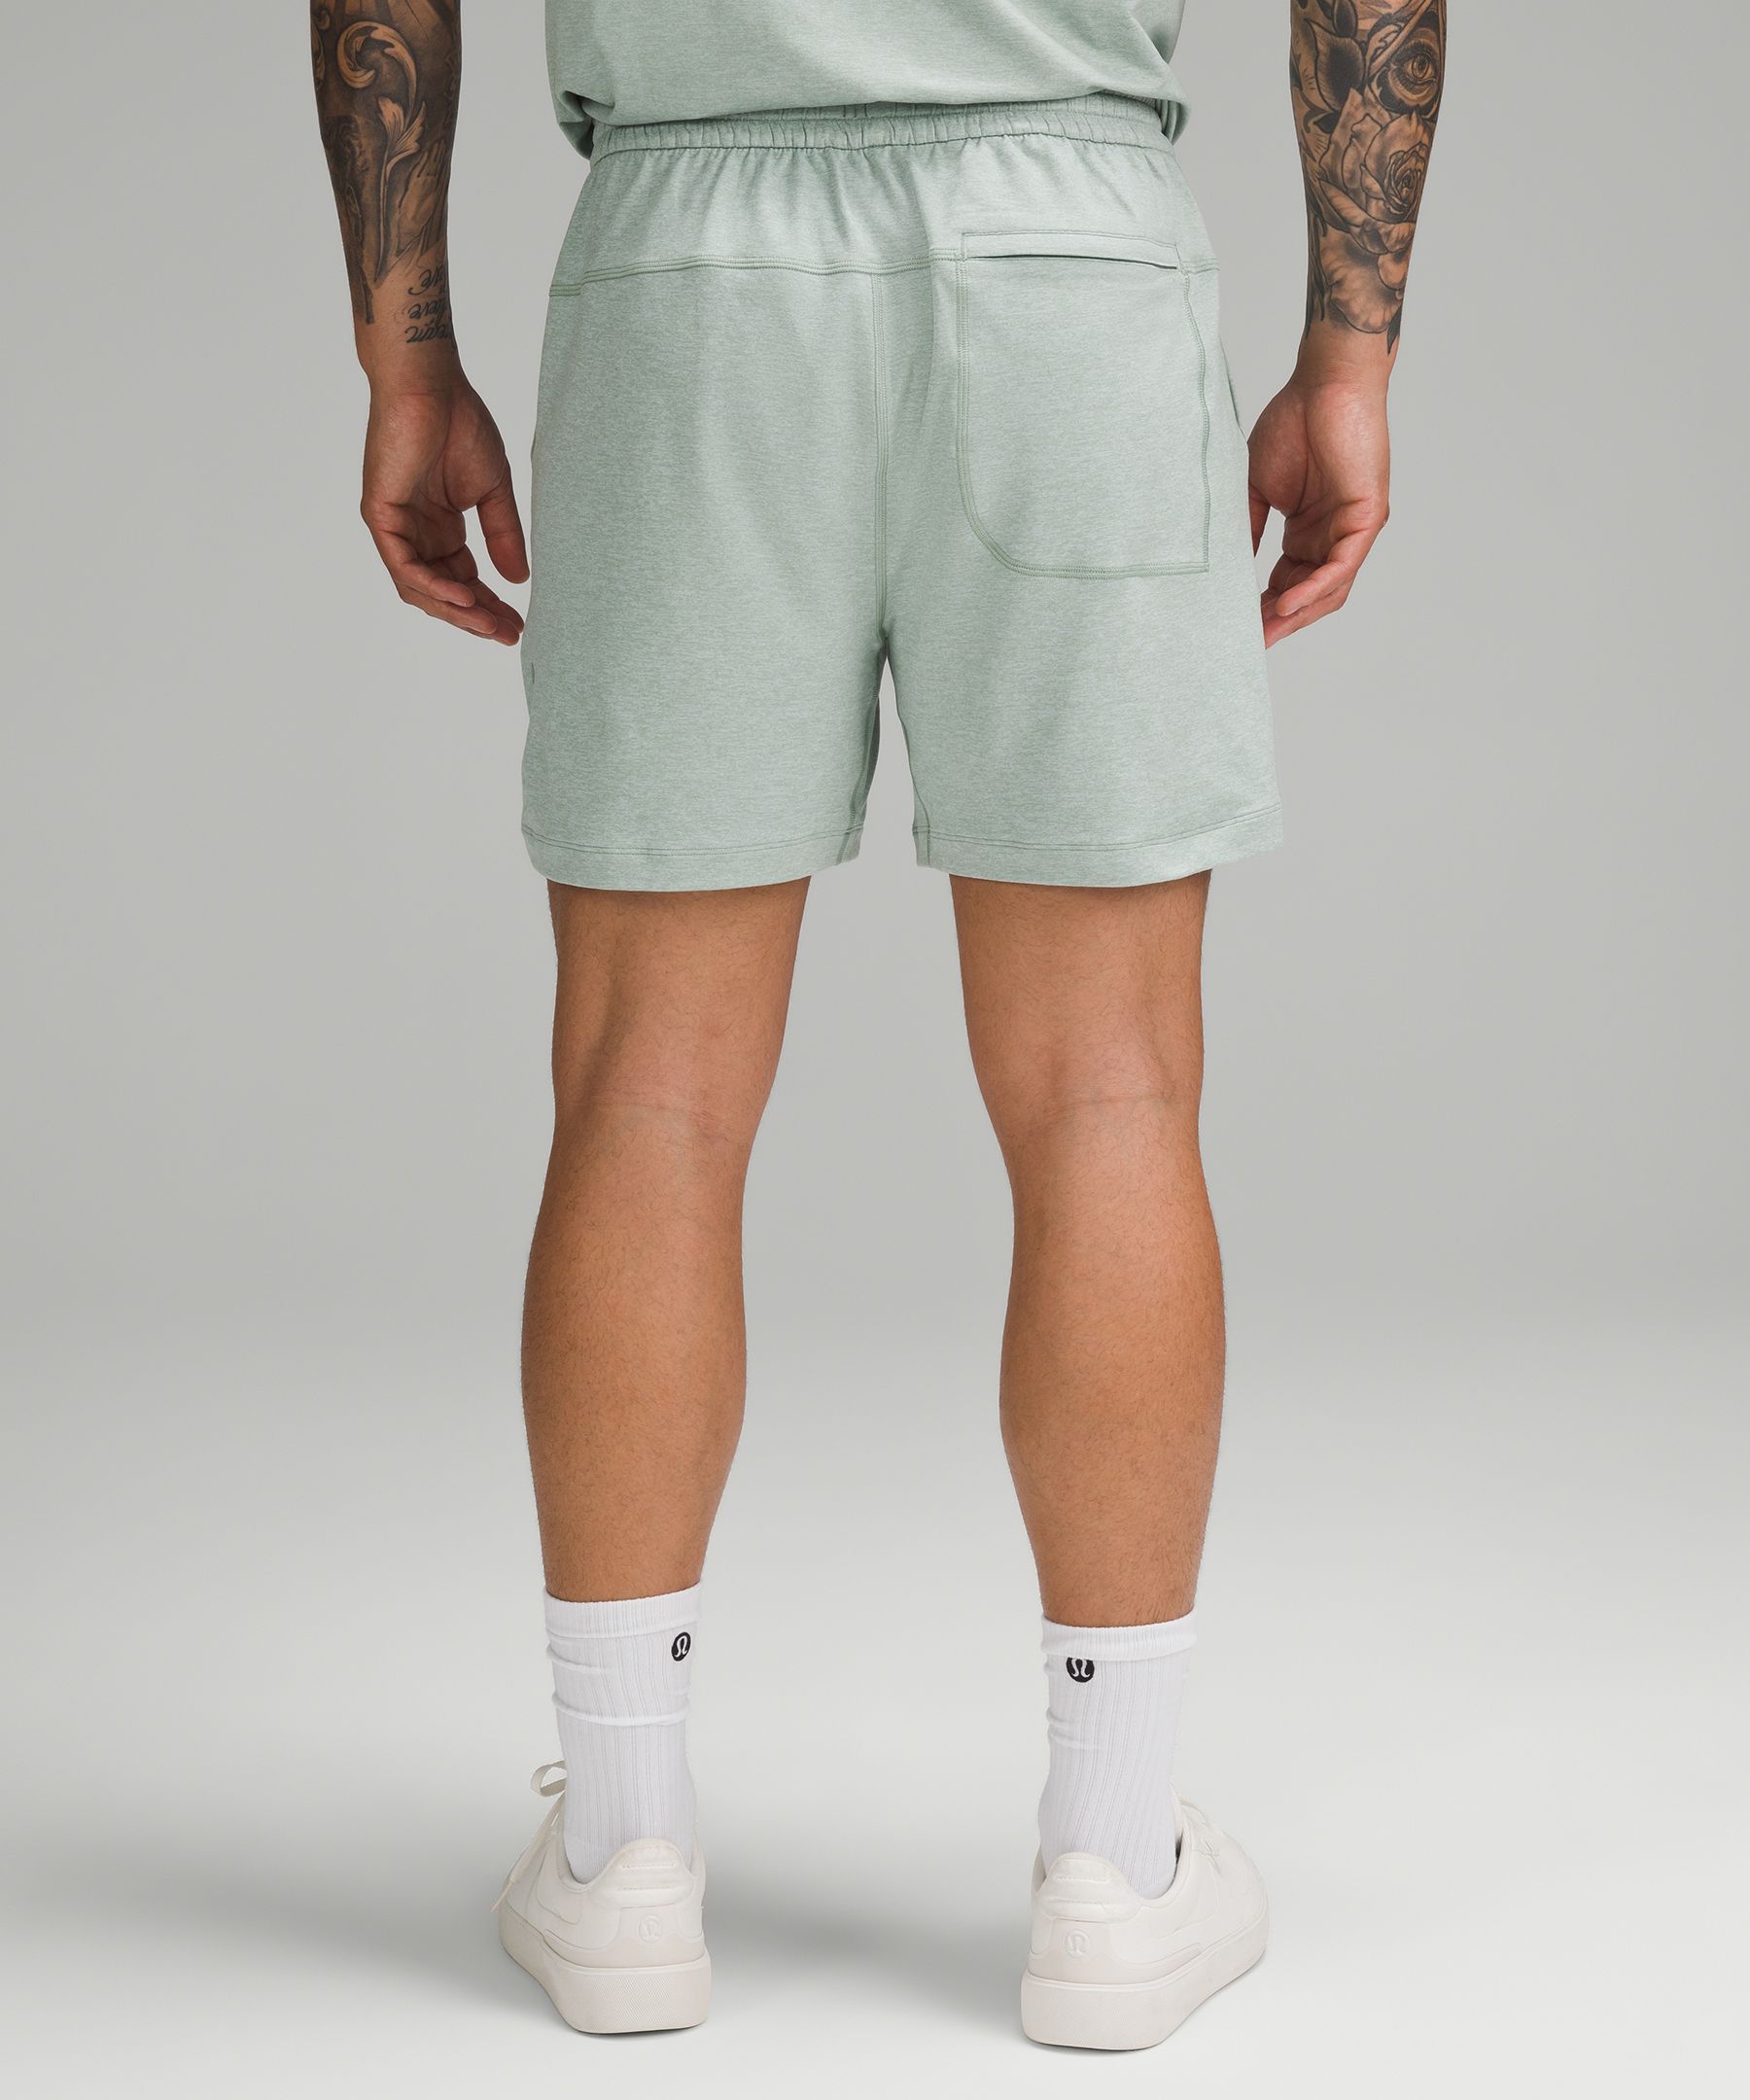 Shop Lululemon Soft Jersey Shorts 5"